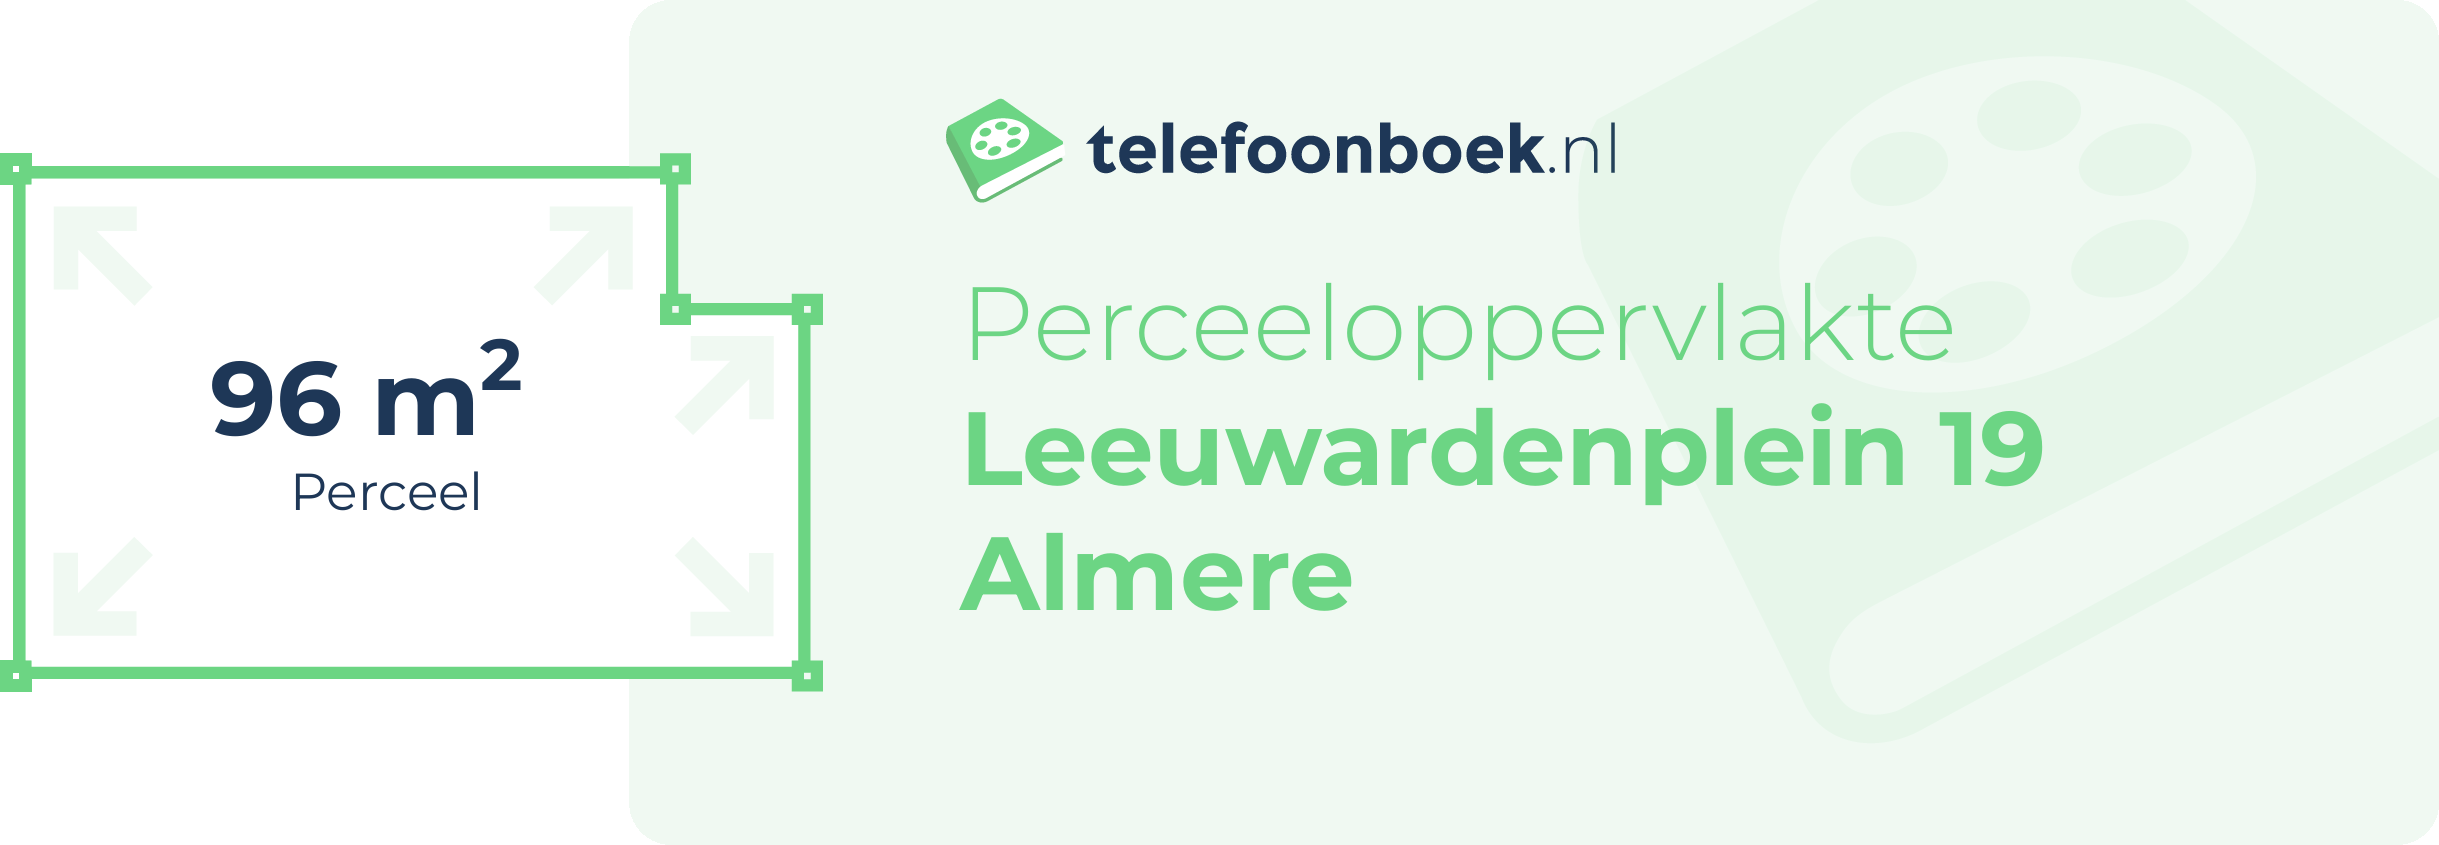 Perceeloppervlakte Leeuwardenplein 19 Almere